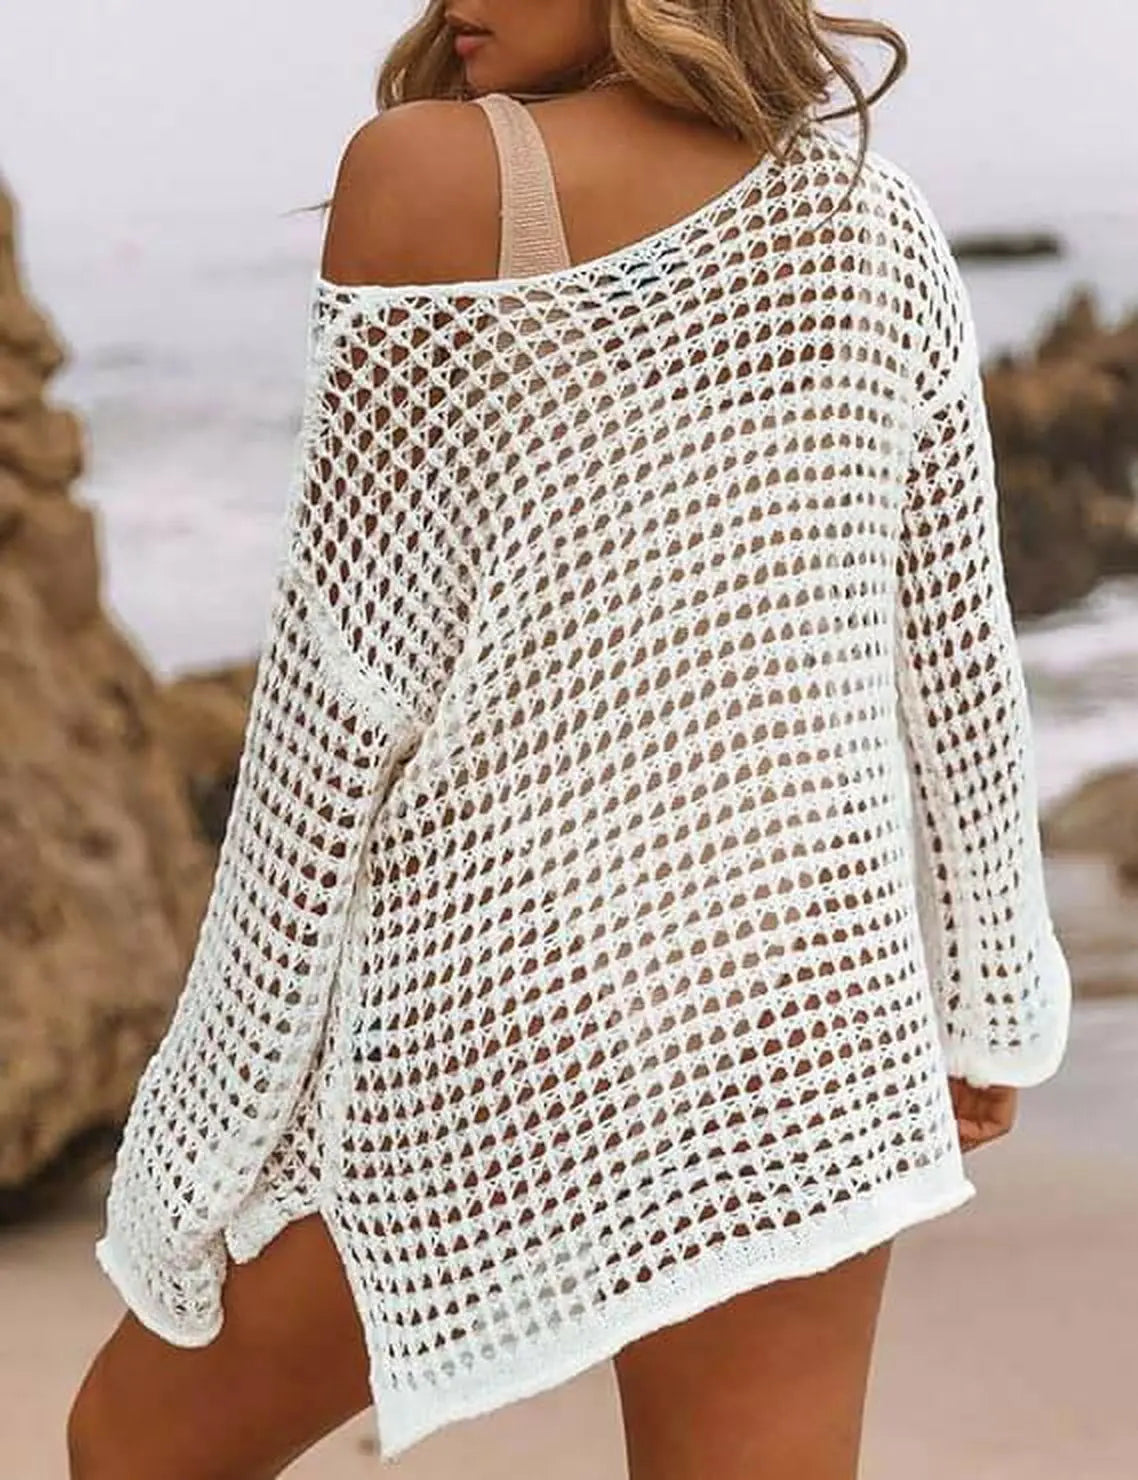 Crochet Crop Tops for Women SwimSuit Cover Ups